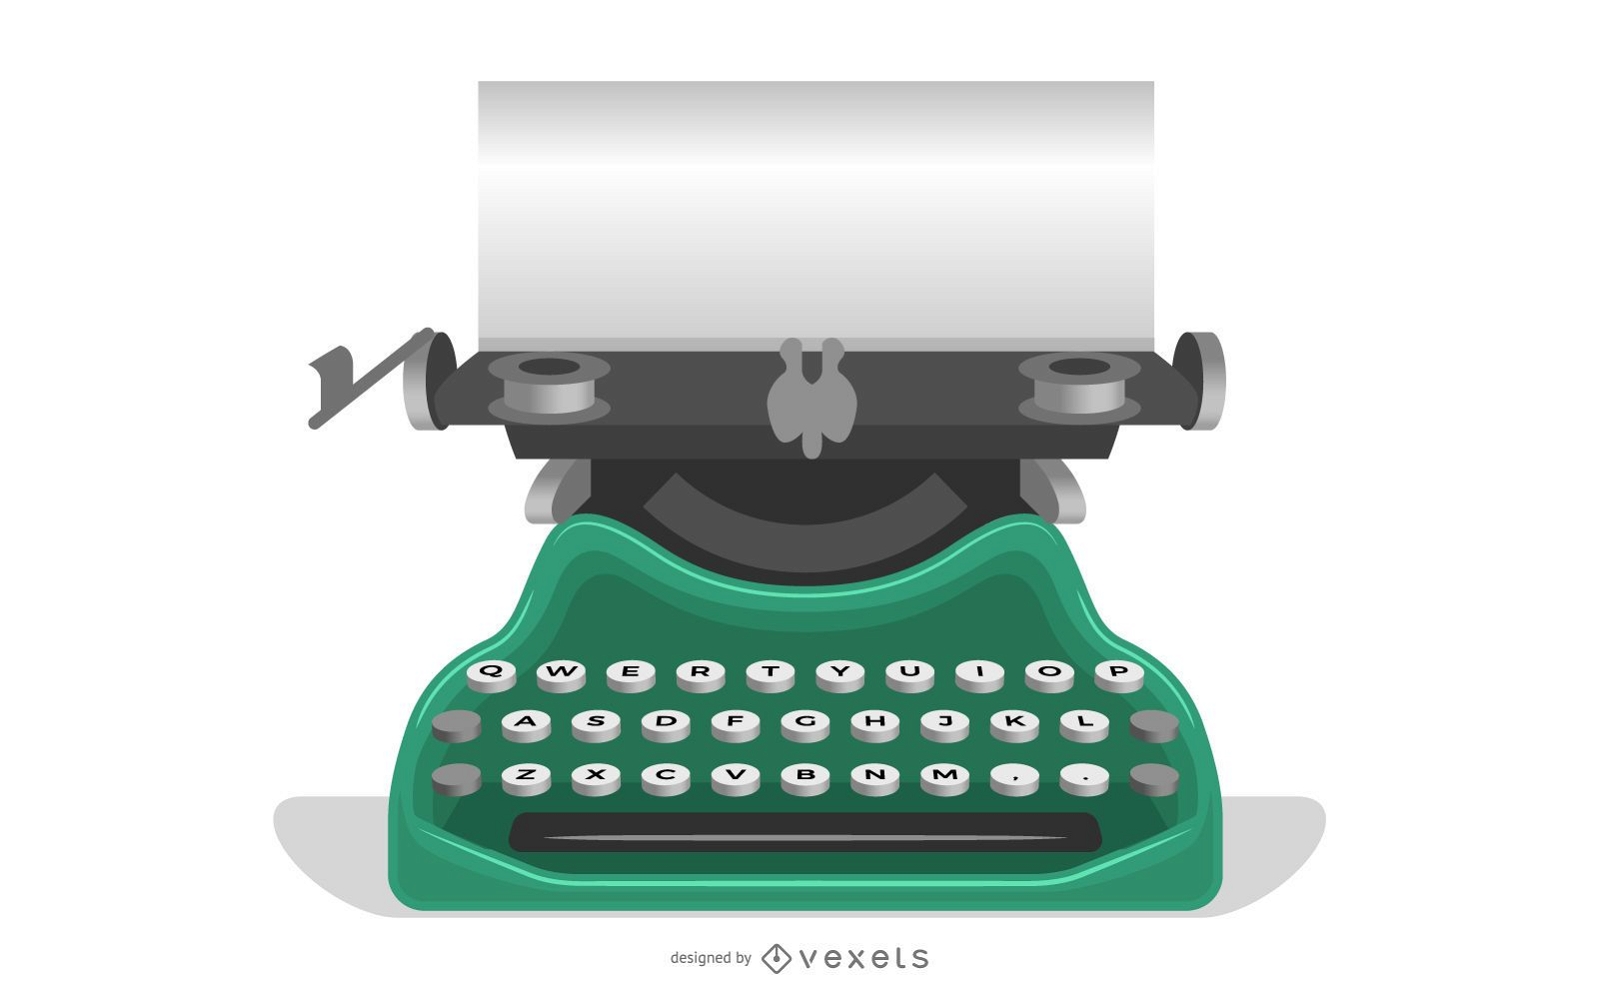 Máquina de escrever velha com um papel